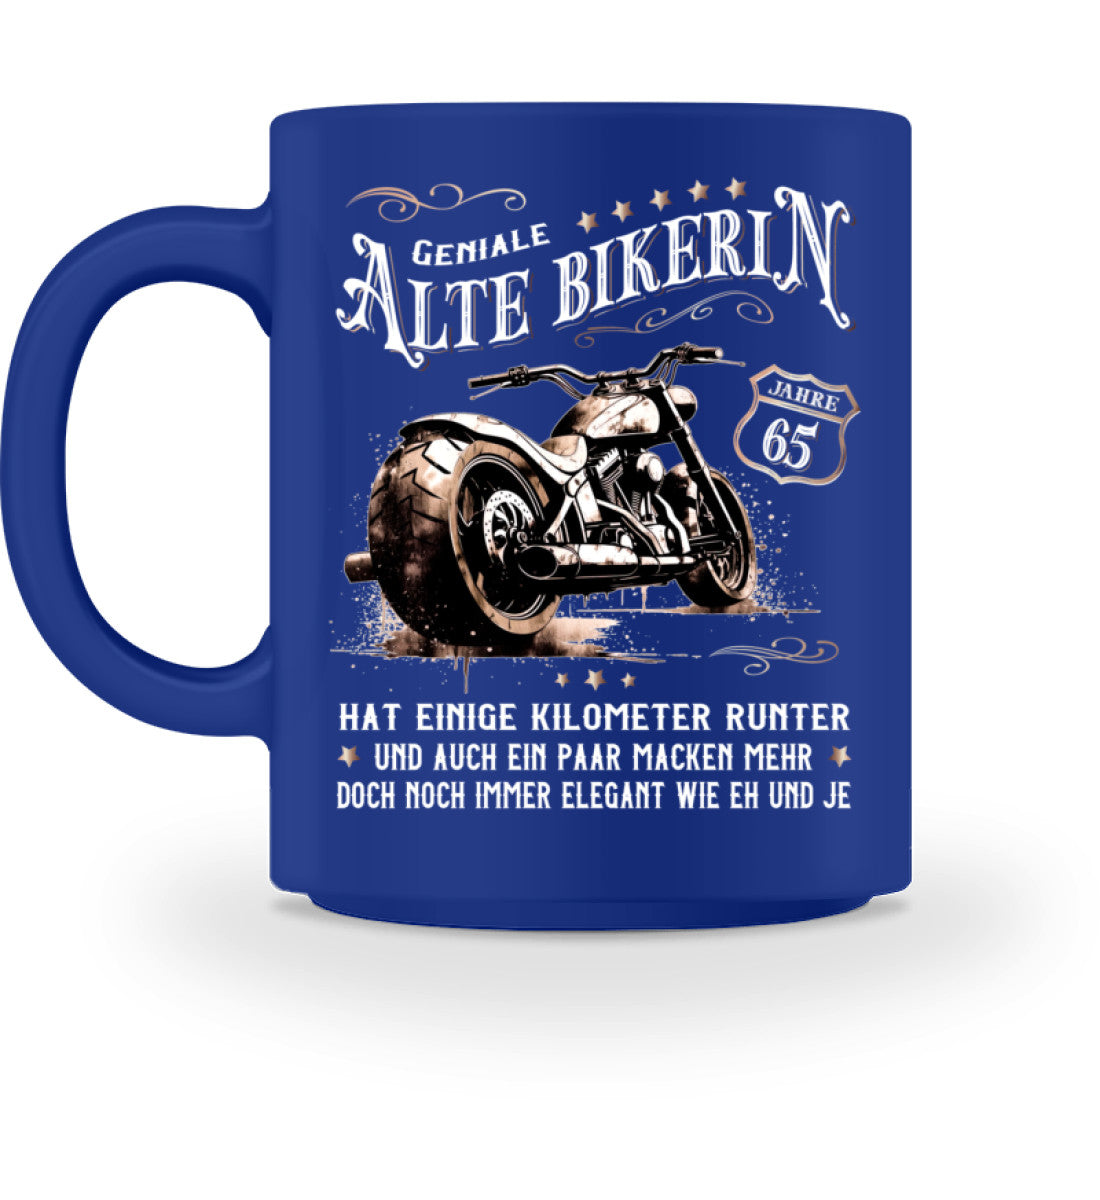 Eine Bikerin Geburtstags-Tasse für Motorradfahrerinnen, von Wingbikers, mit dem beidseitigen Aufdruck, Alte Bikerin - 65 Jahre - Einige Kilometer Runter - Doch elegant wie eh und je, in blau.